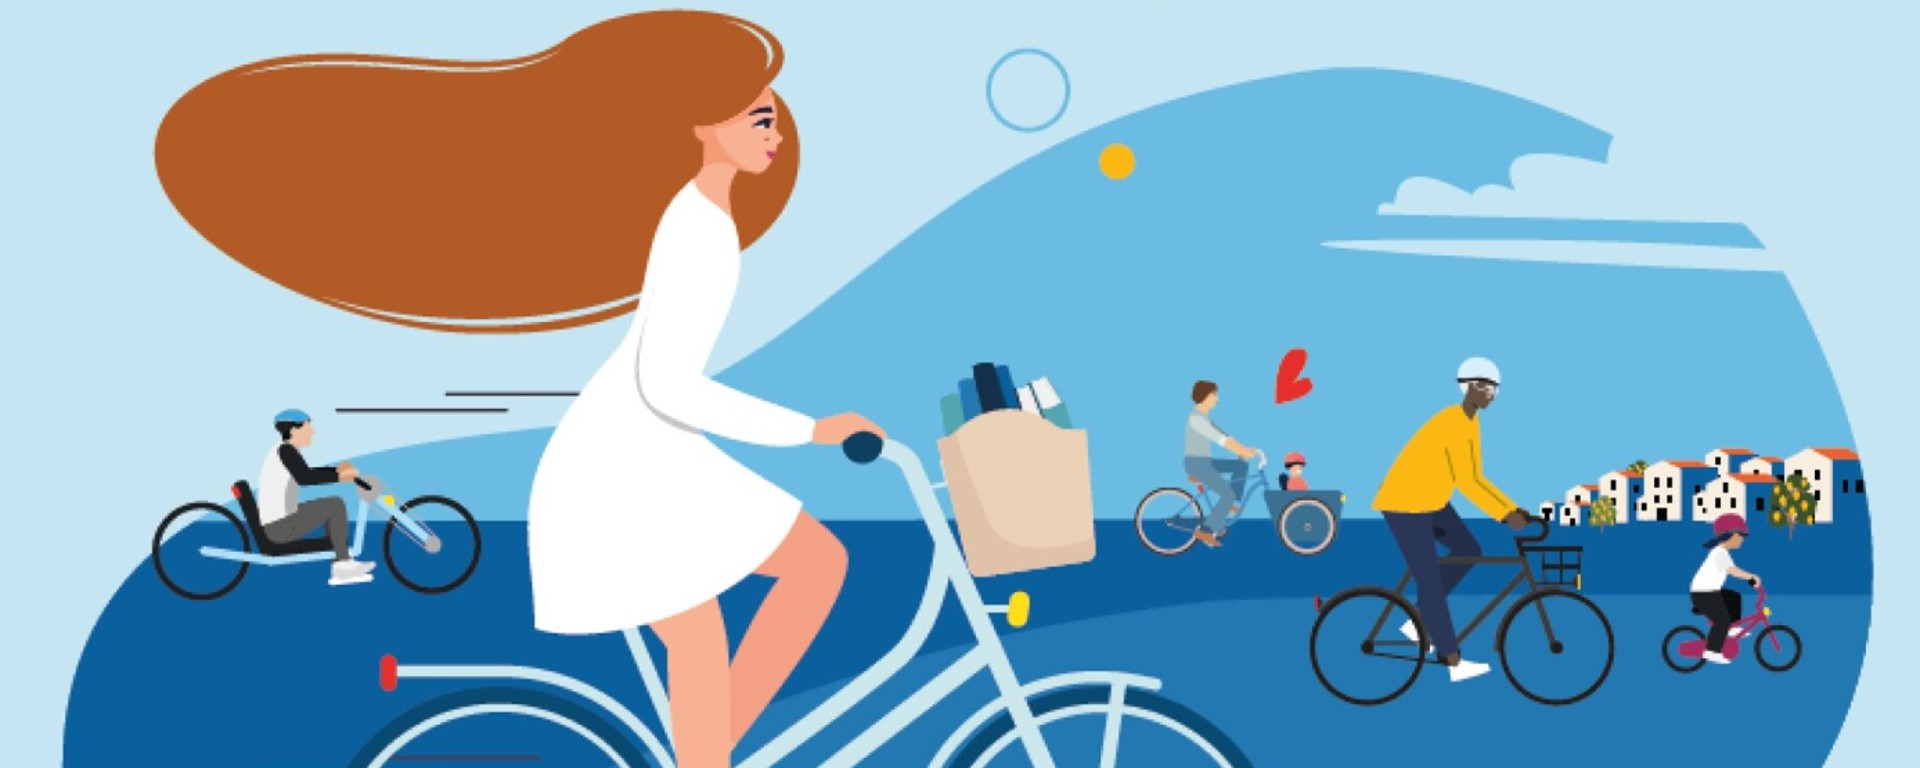 Mai à vélo en France : découverte et événements autour de la bicyclette